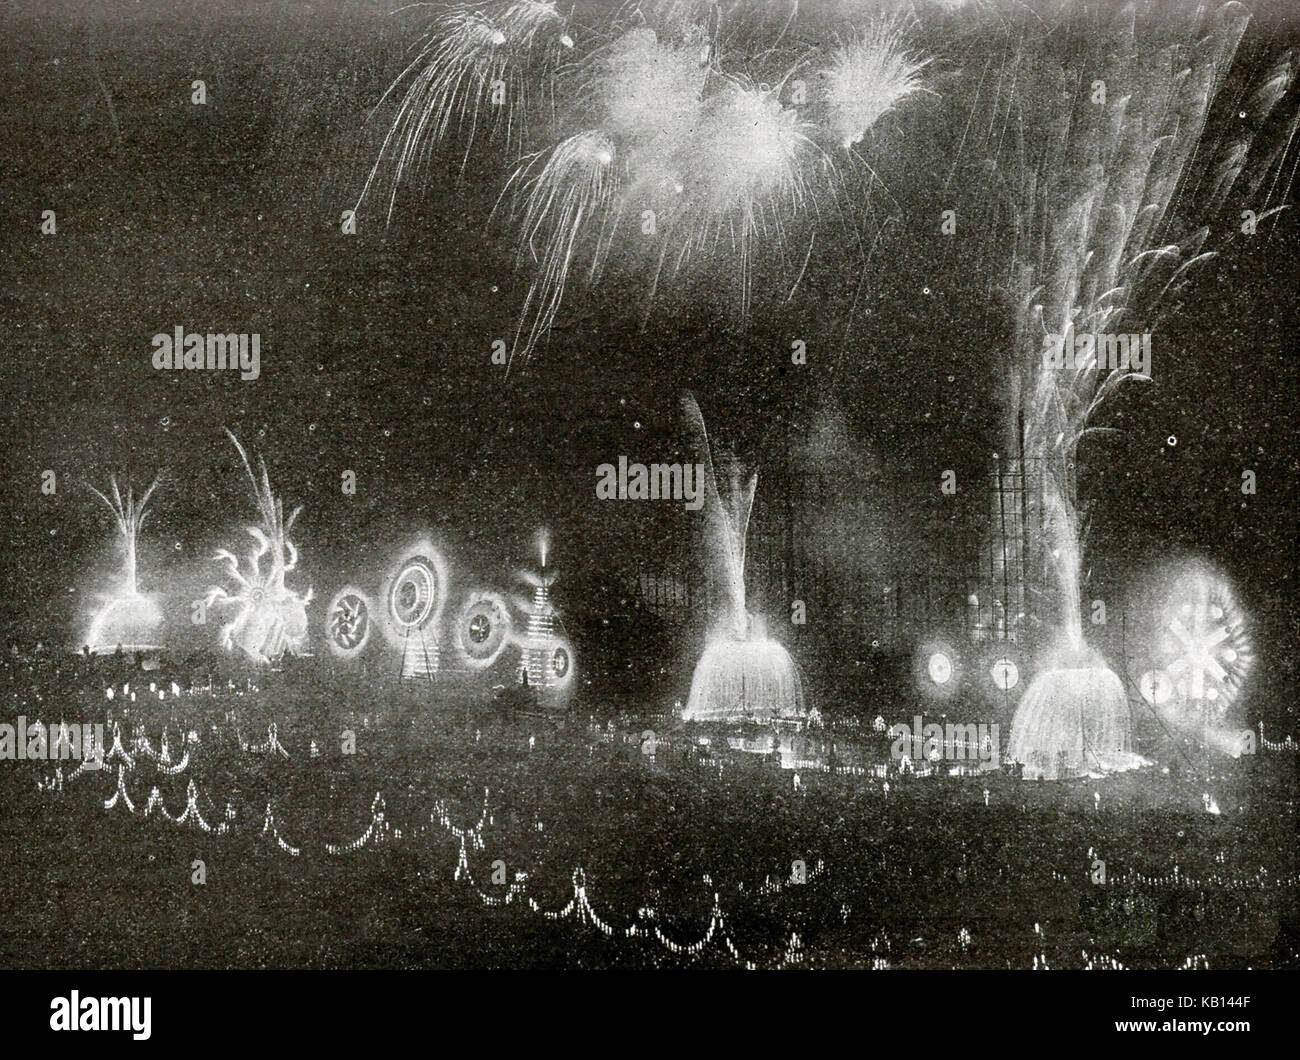 1902 ist ein Brock "Nutzen" Feuerwerk in London (Vorteile wurden kostenlose öffentliche zeigt wie bei der Crystal Palace in London statt - hier gesehen). Stockfoto